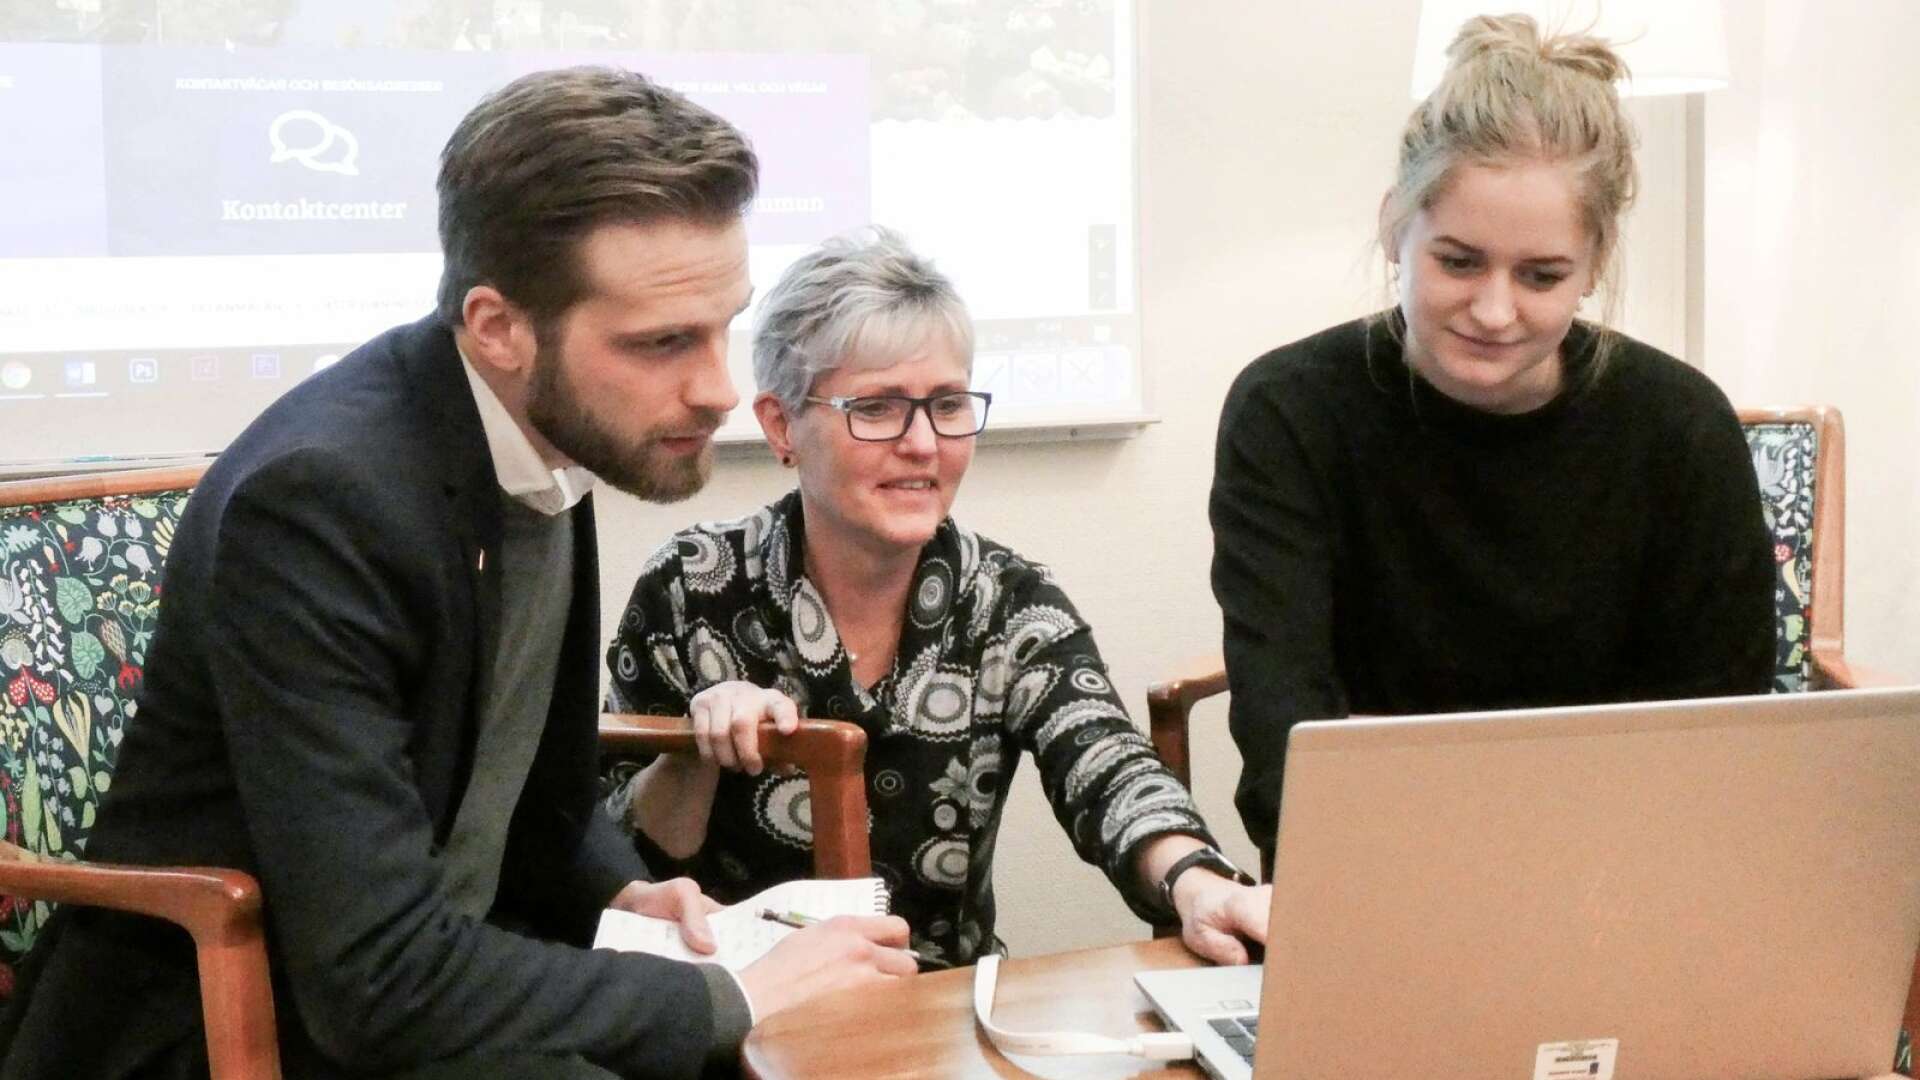 Johan Österman, kommunikationsansvarig, Maria Olsen, webbkoordinator, och Sara Vintfjärd, kommunikatör gläds över framgången för kommunens webbplats.